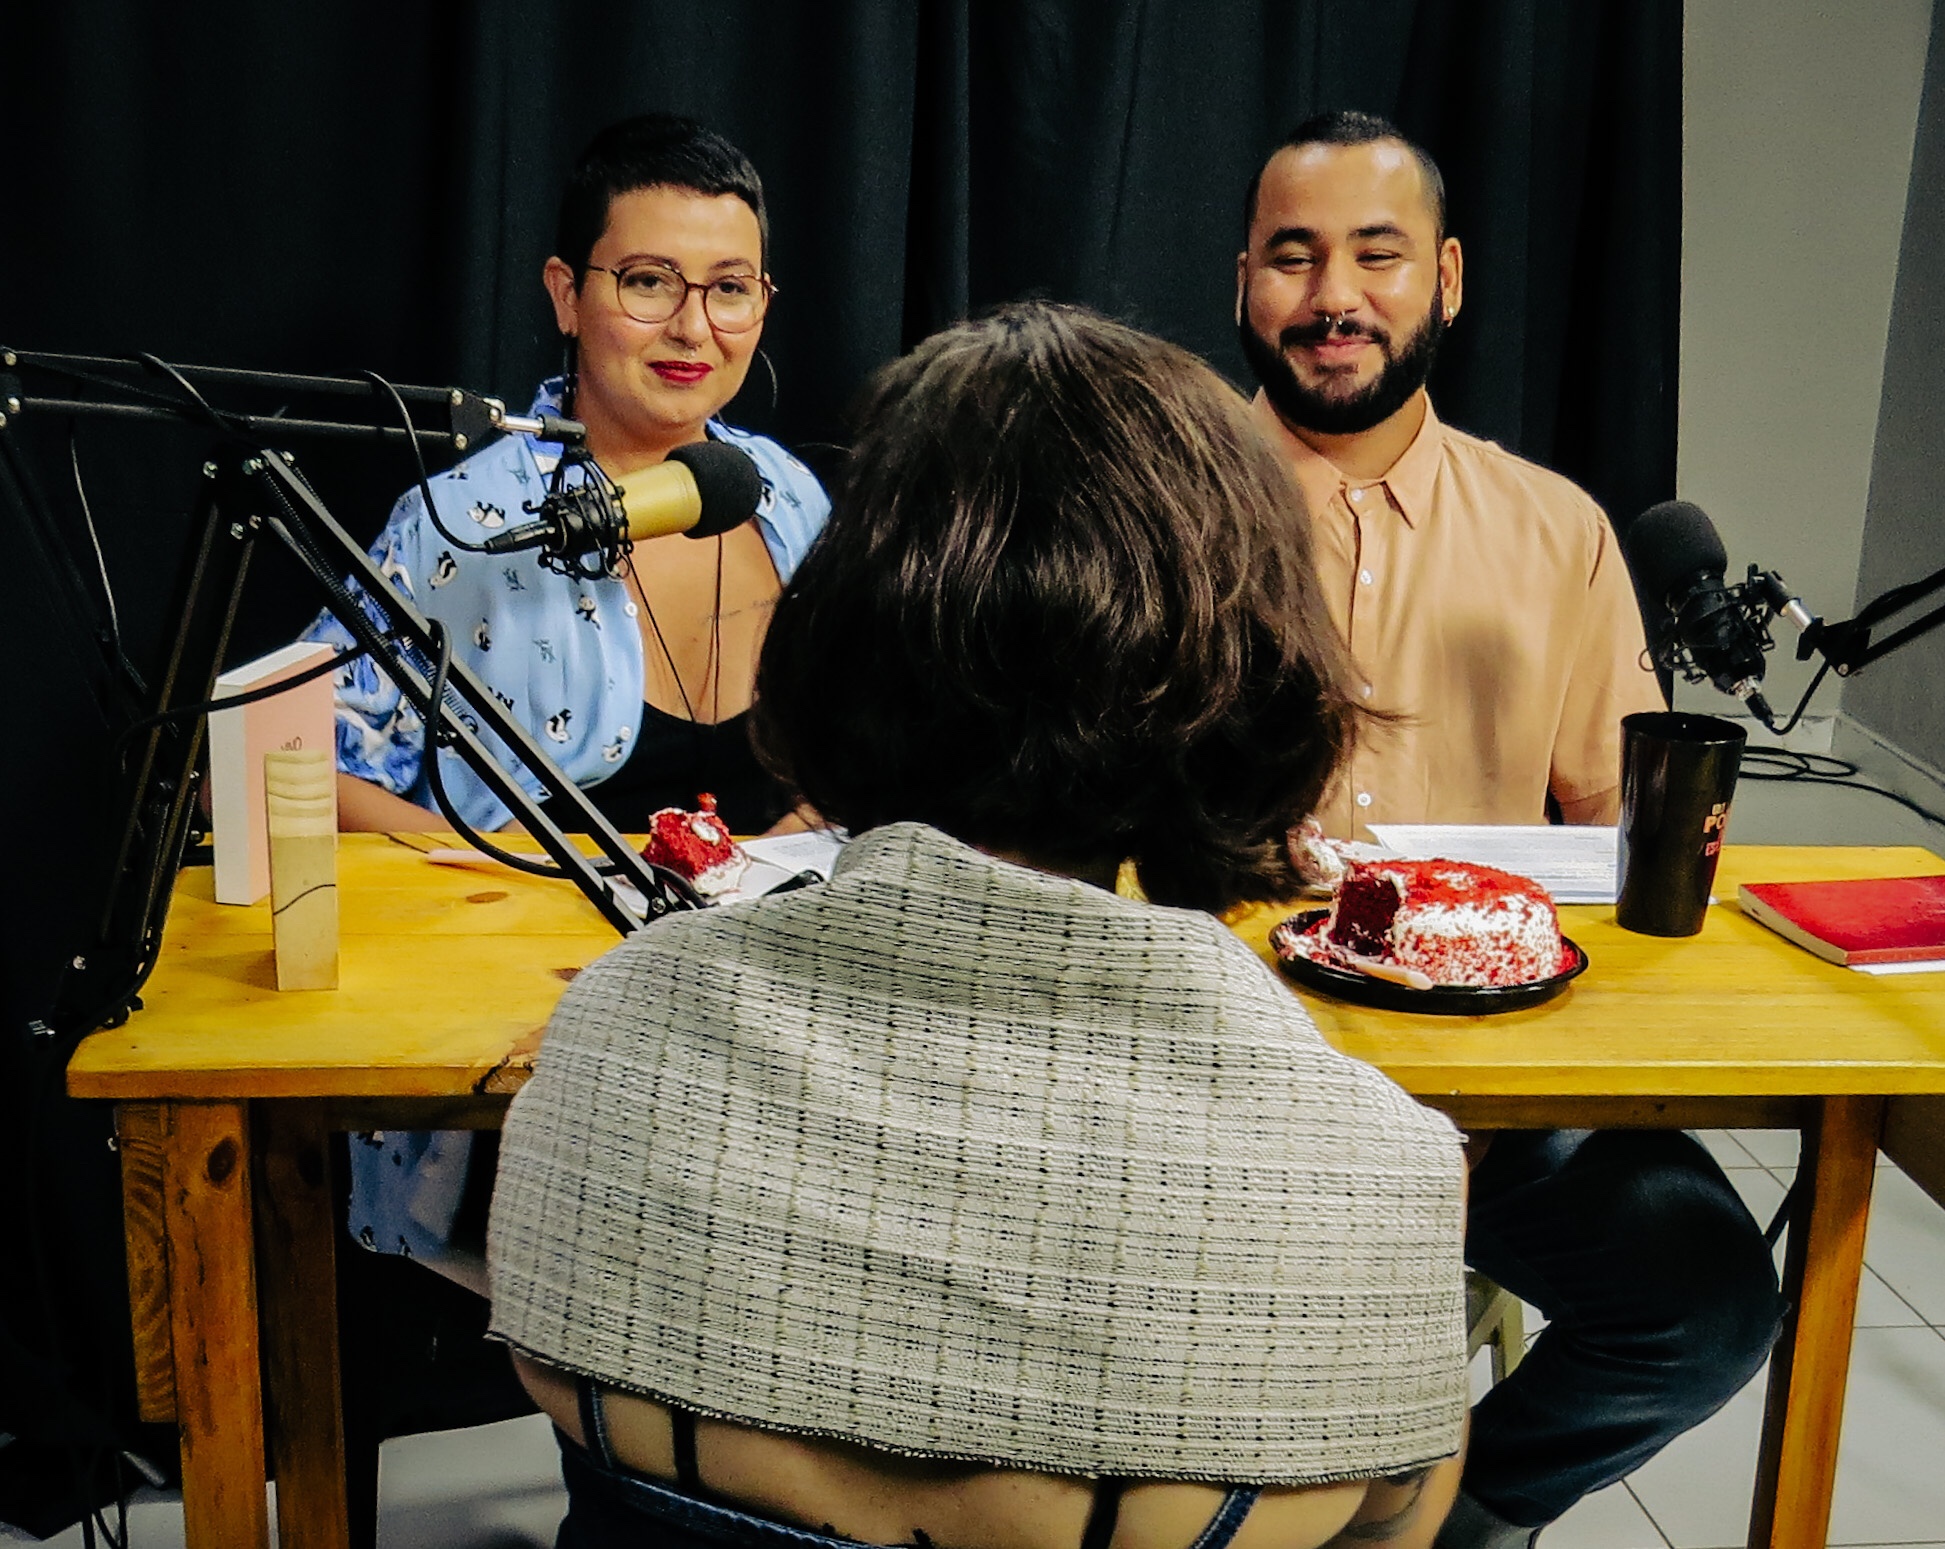 Poetas potiguares lançam podcast sobre poesia